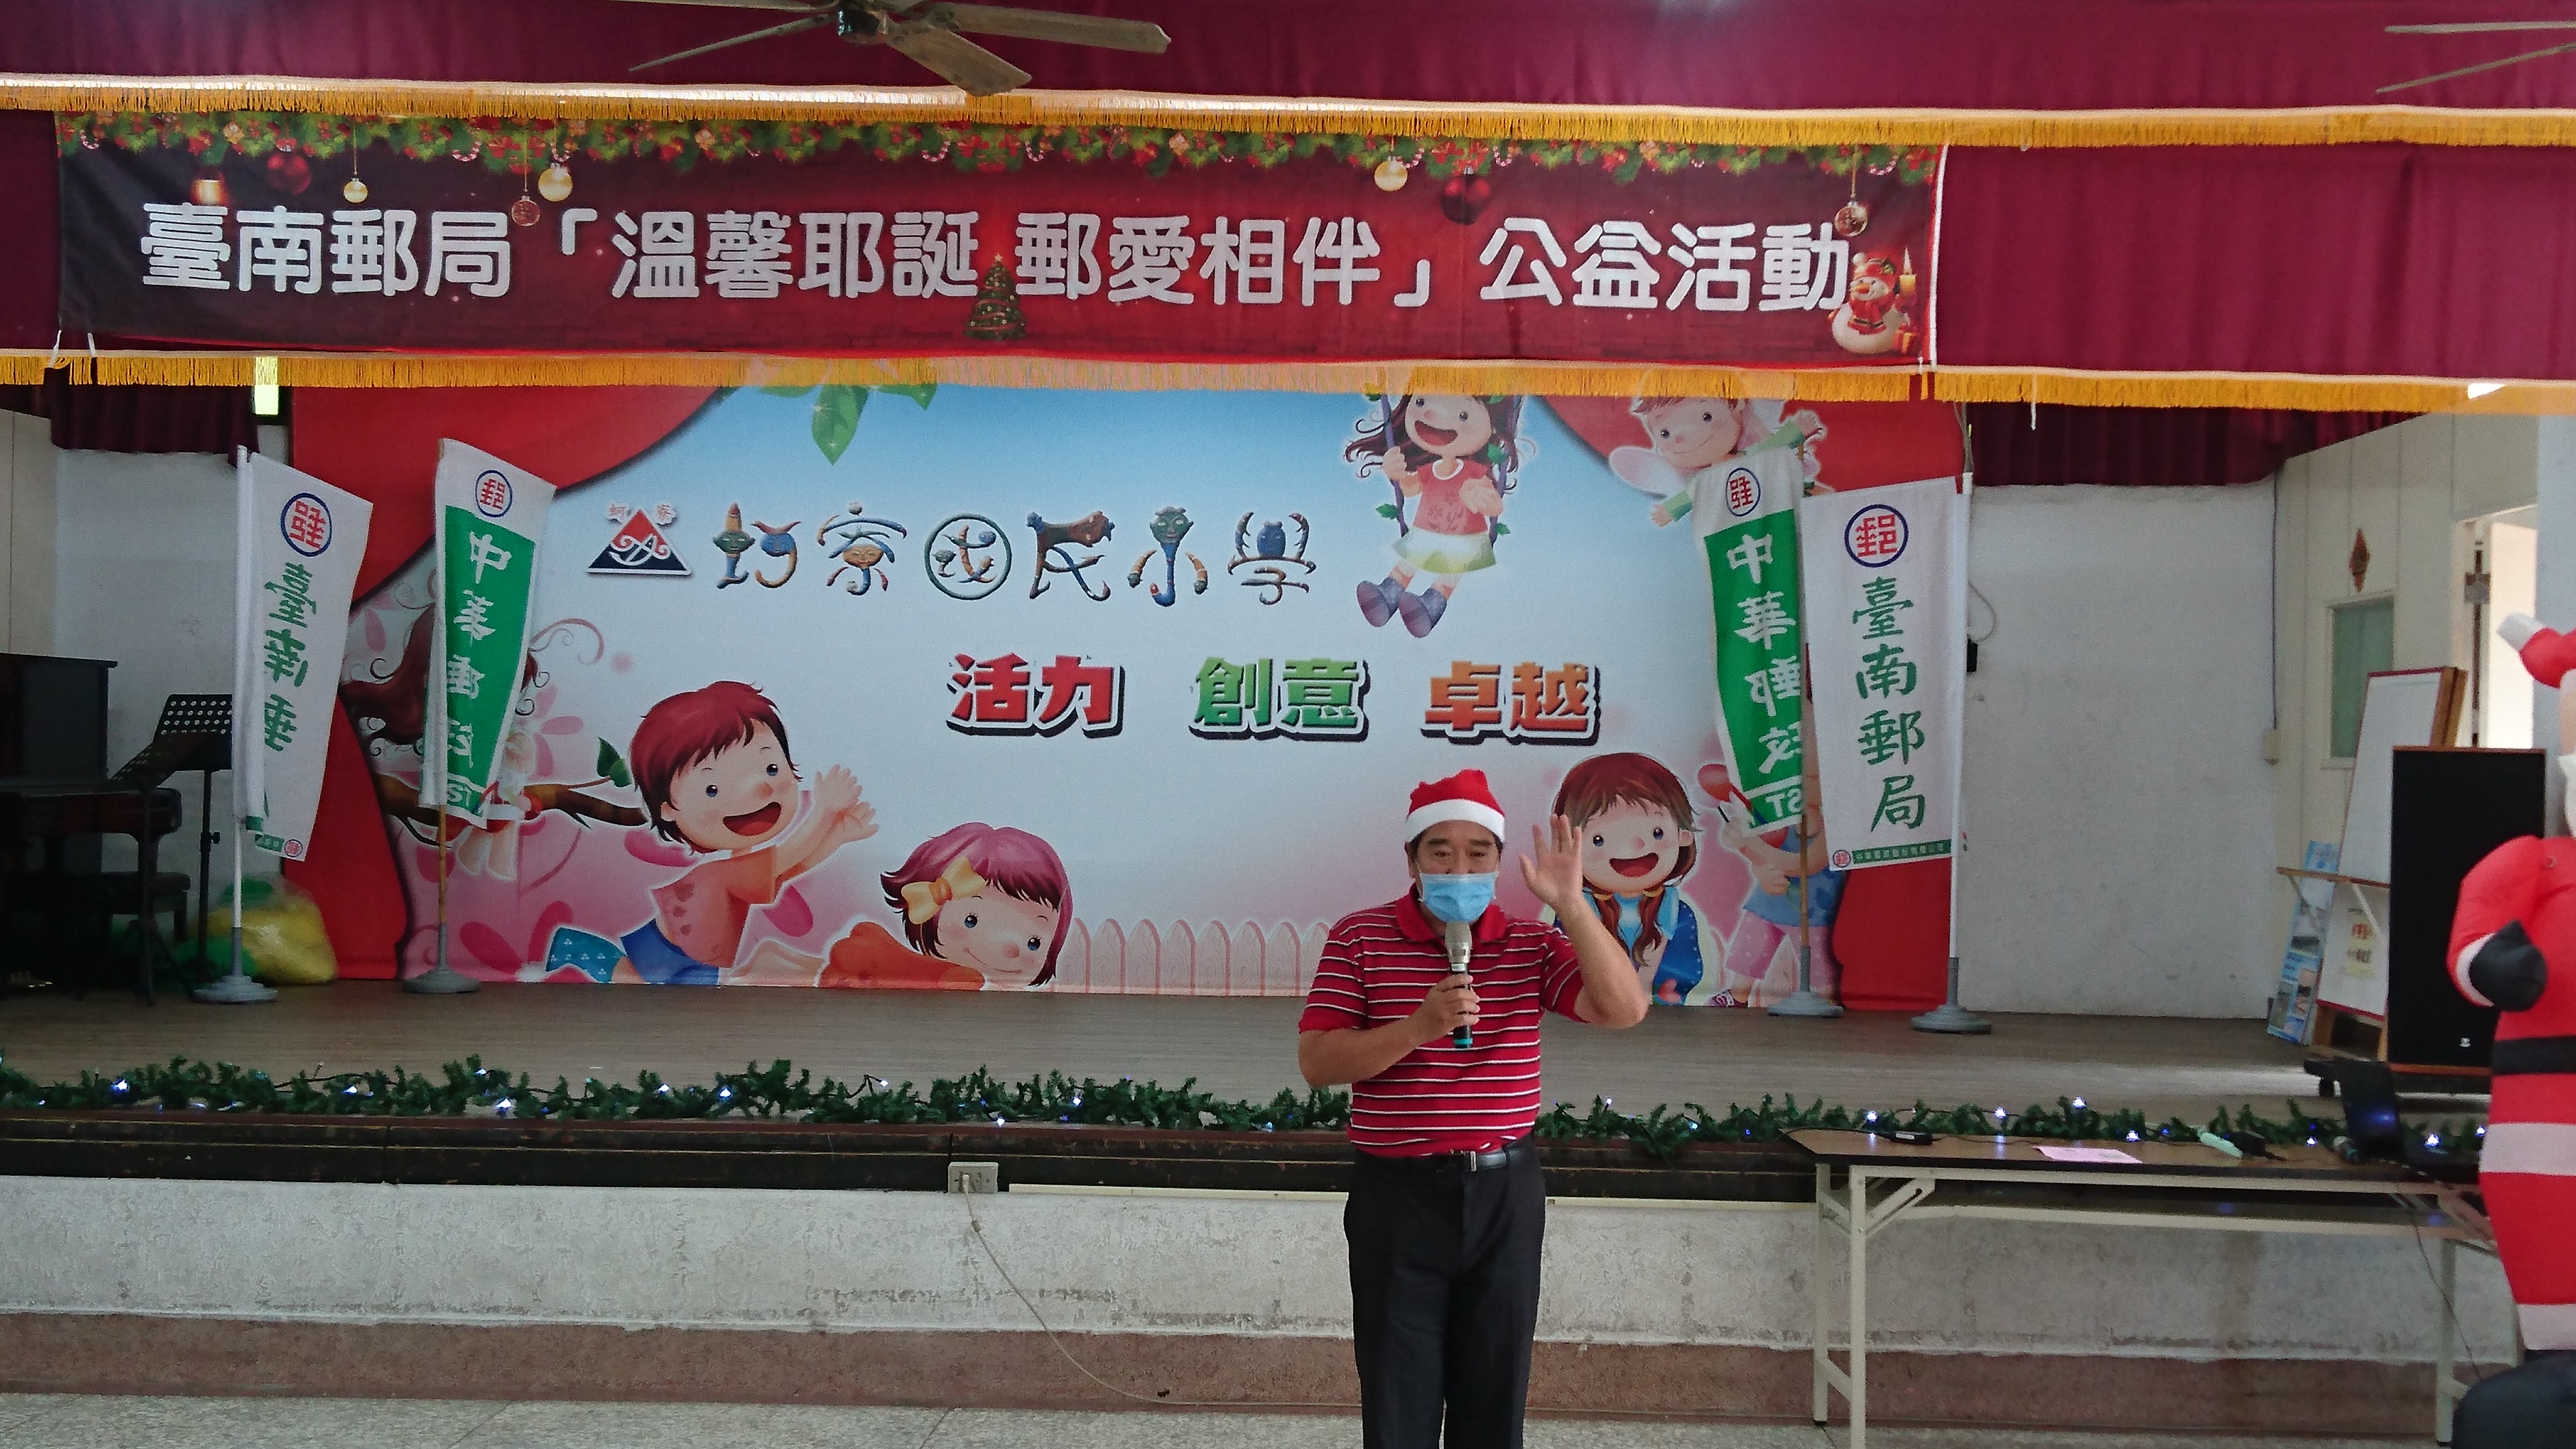 臺南郵局辦理「溫馨耶誕郵愛相伴」公益活動